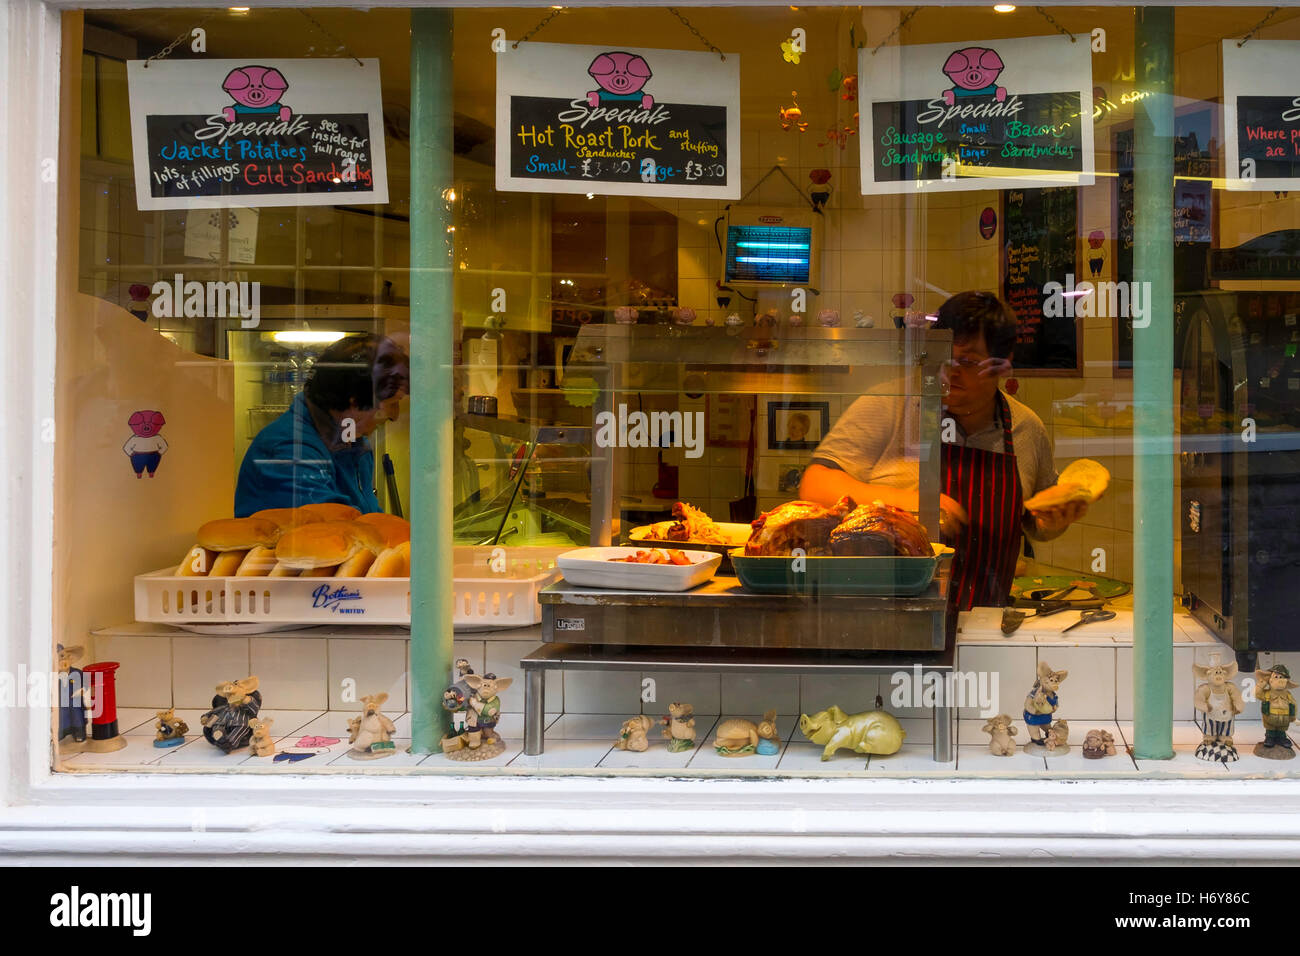 Les joints fraîchement rôtis de viande de porc et saucisses dans une vitrine de la vente de sandwichs chauds. Banque D'Images